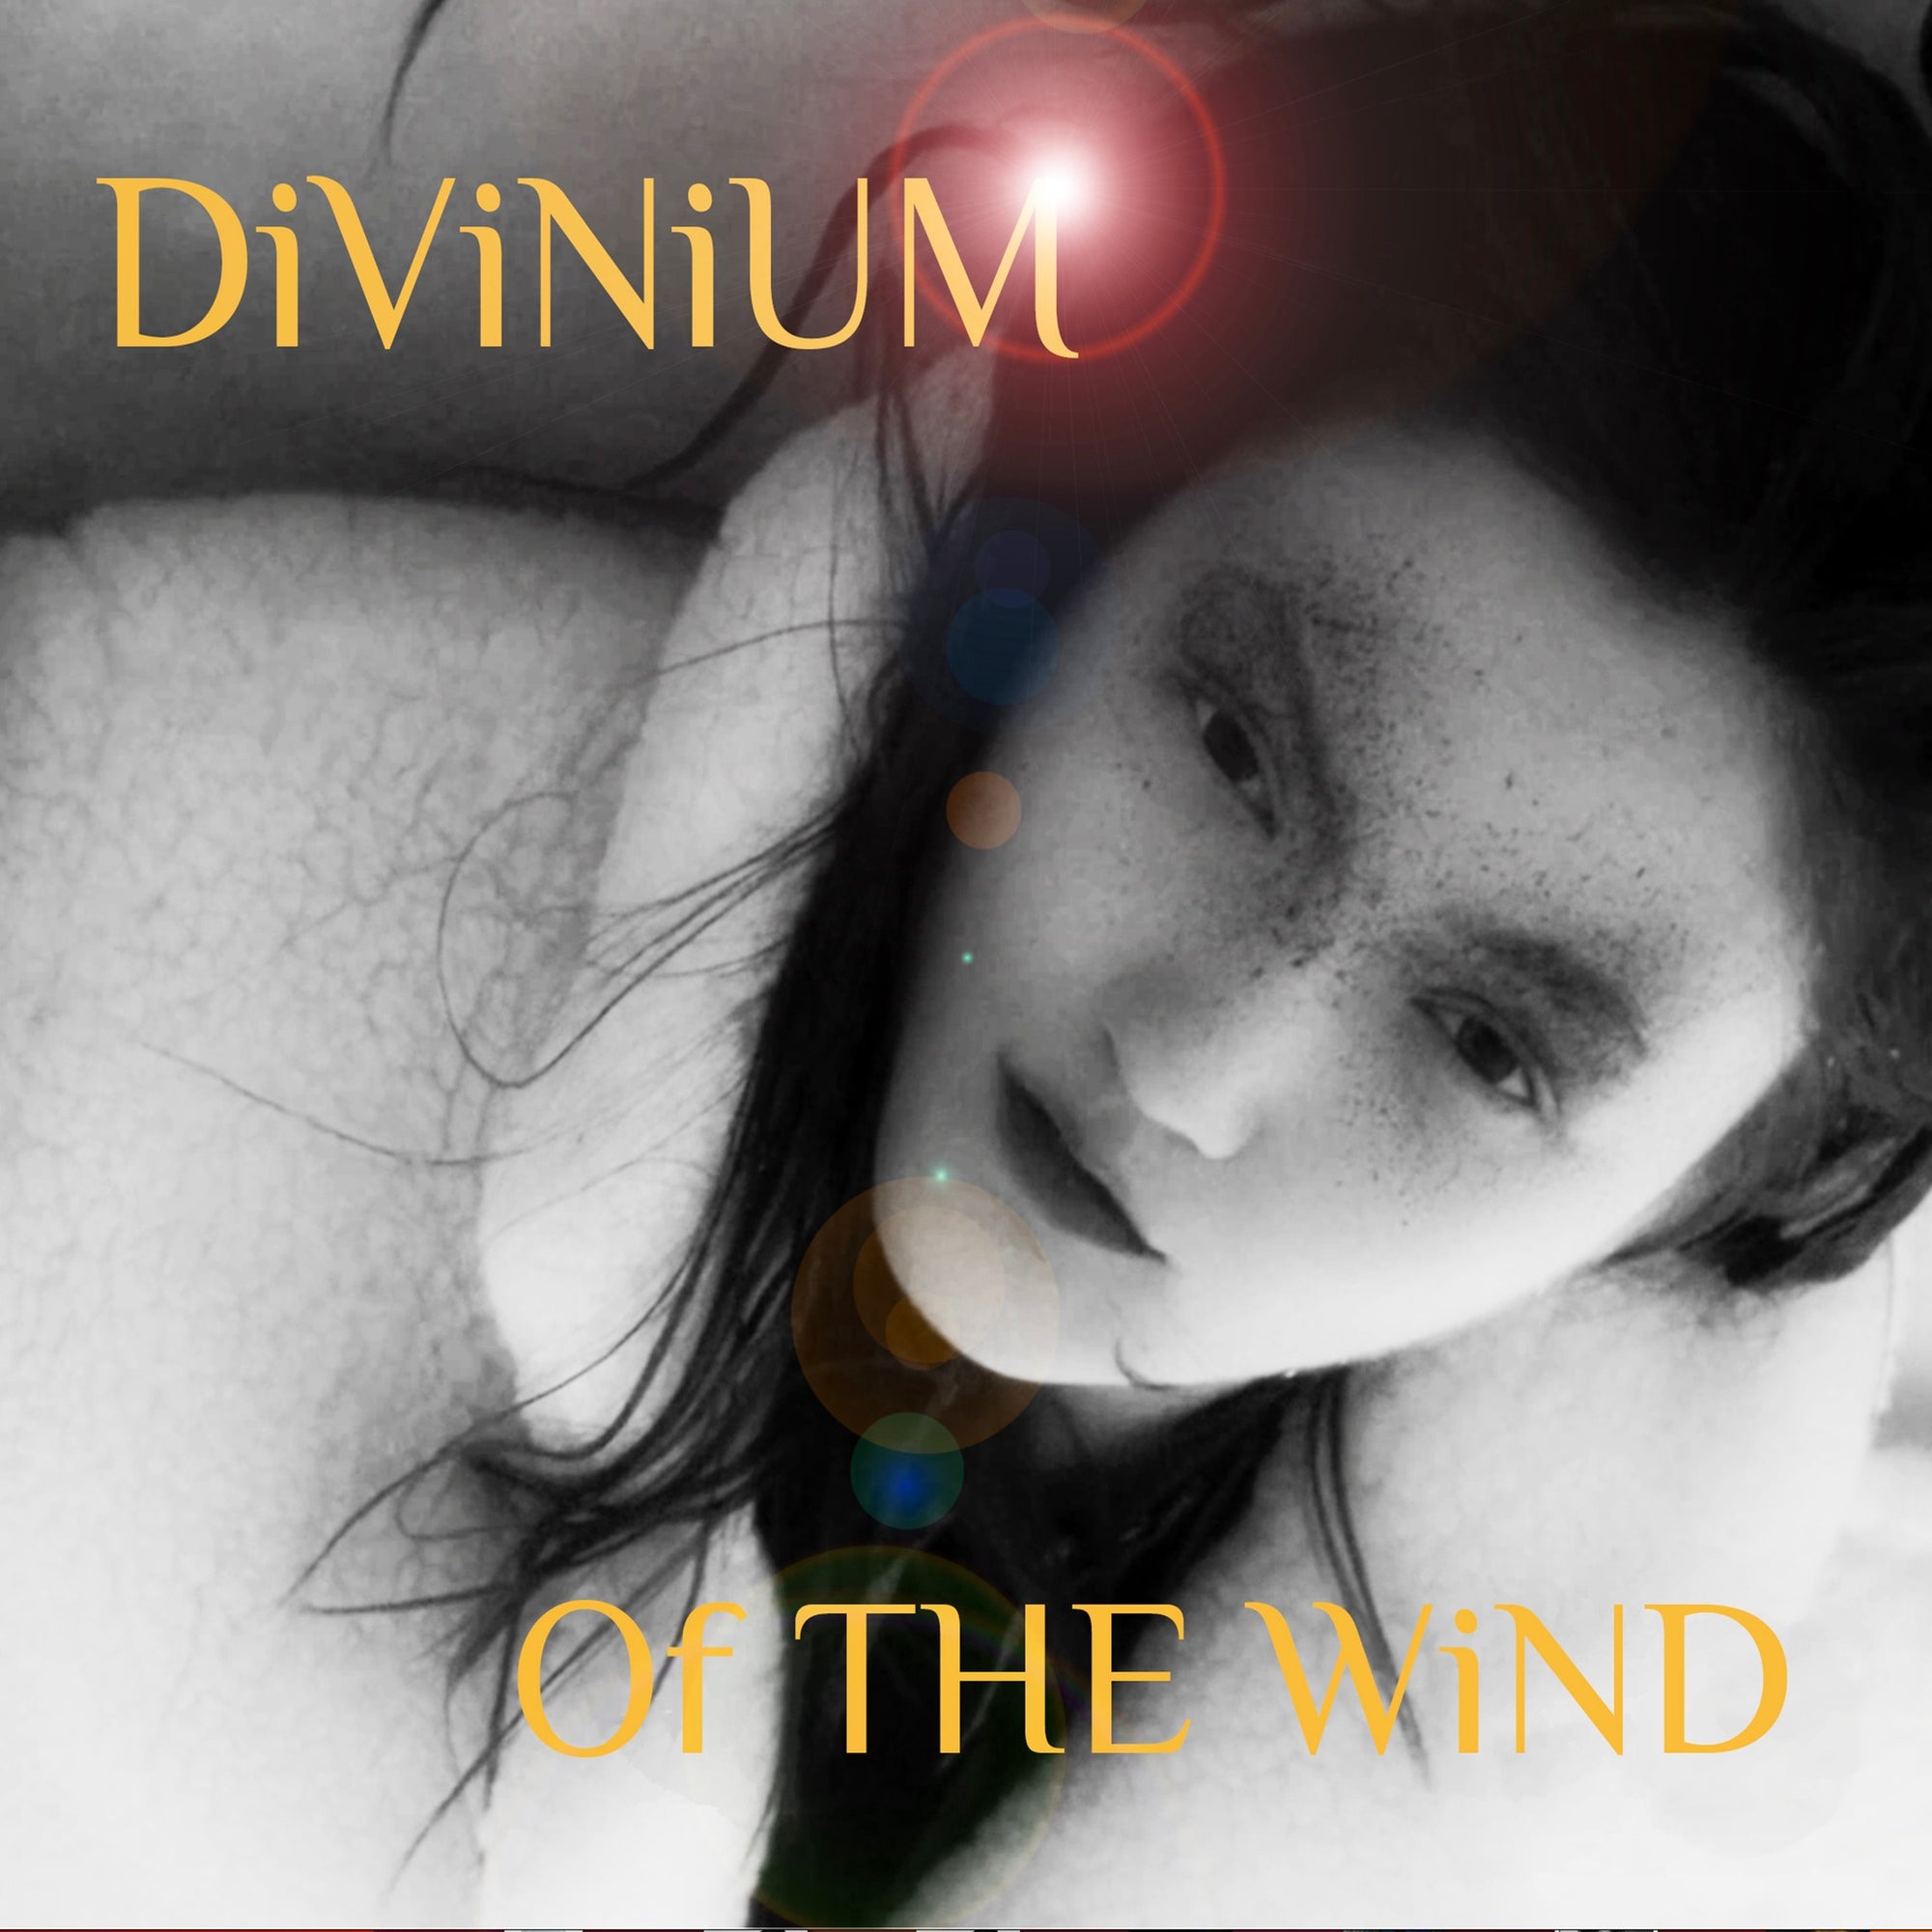 DiViNiUM - 'Of THE WiND'